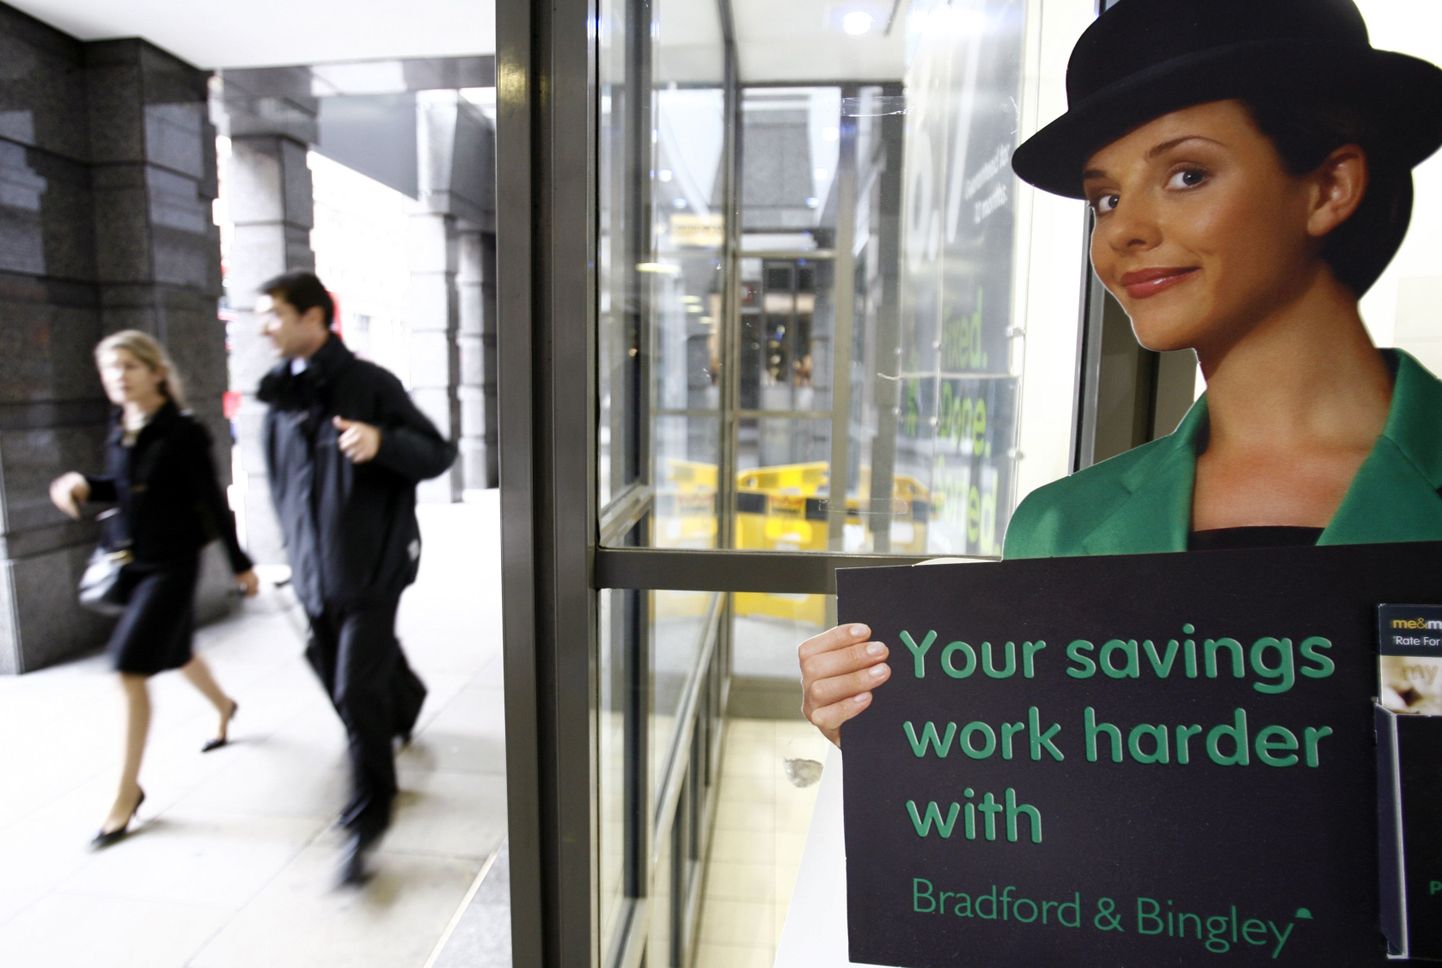 B&B reklaam Londonis: sinu säästud töötavad kõvemini Bradford & Bingleys.